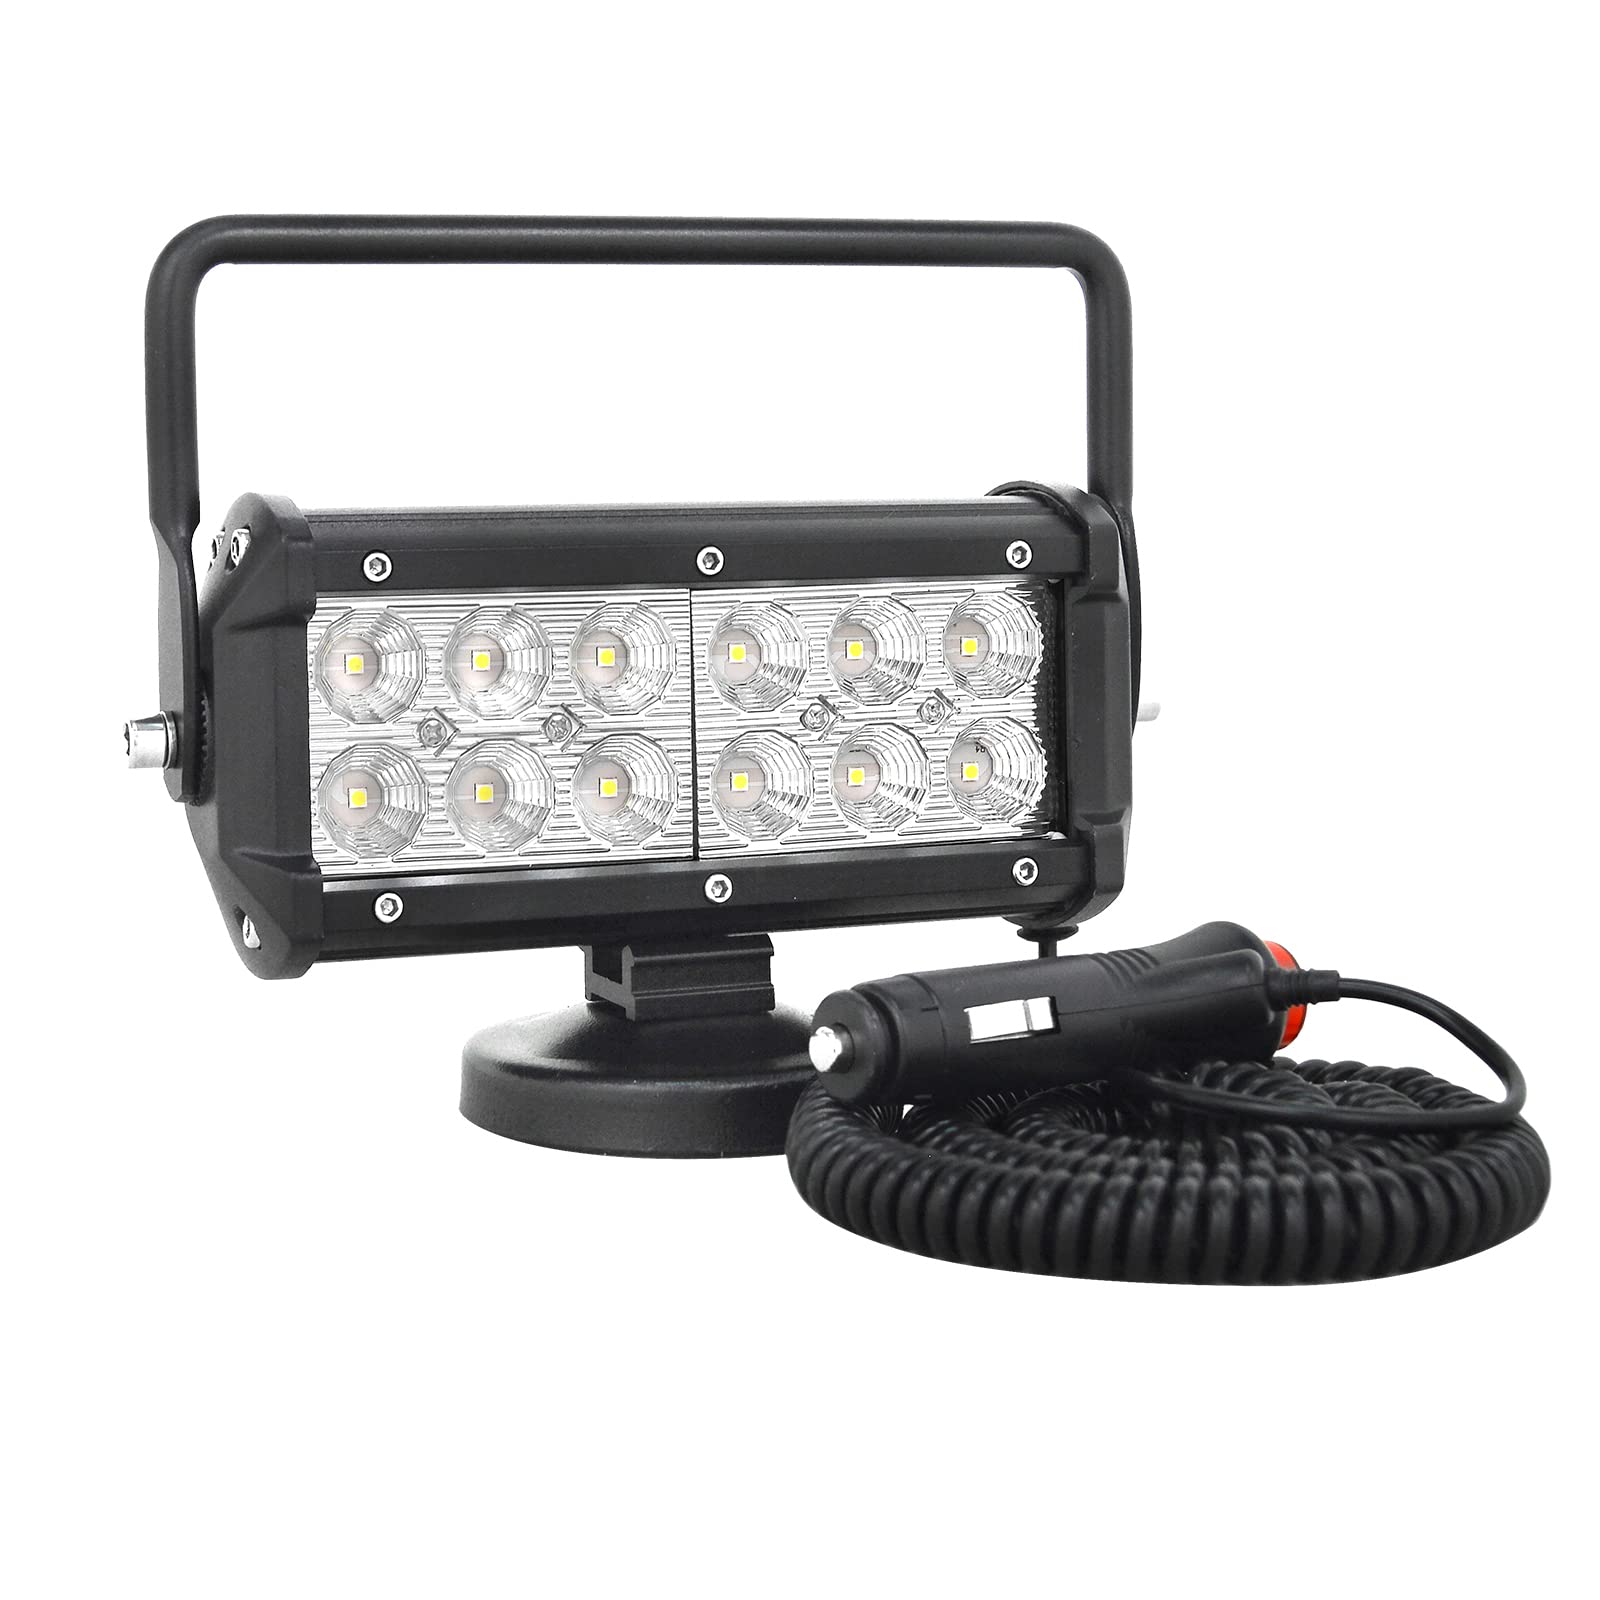 PICAA 1tlg 7 Zoll LED Arbeitsscheinwerfer mit Magnetfuß, 36W Led Flutlicht Lightbar Auto Offroad 4x4 LKW Traktor 12V 24V Zusatzscheinwerfer von PICAA